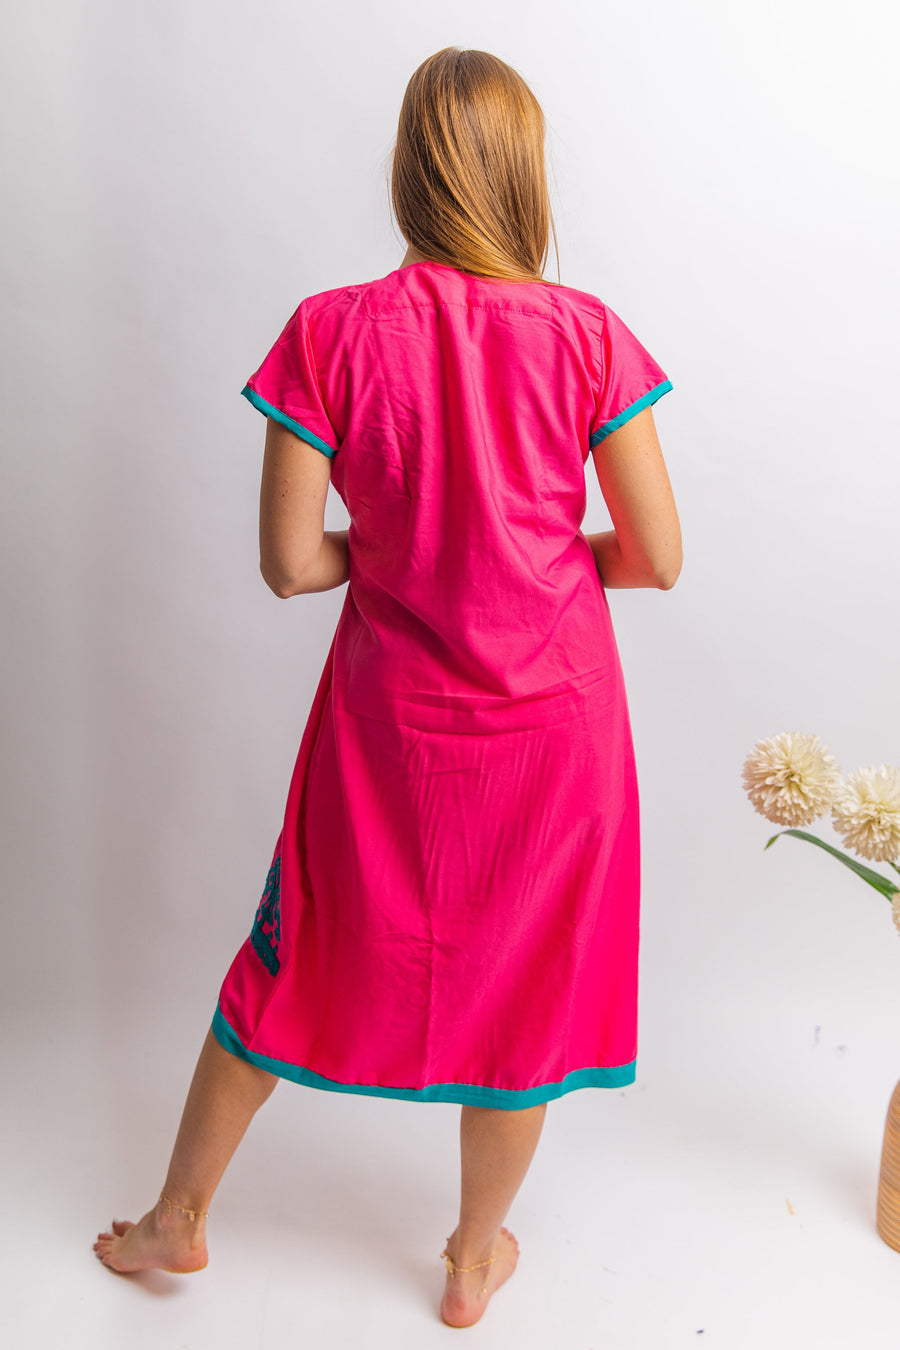 Pink Tunic embroidered kaftan dress, Boho embroidery tunic dress, Pink Summer tunic dress, beach tunic, resorts tunic, Gypsy dress